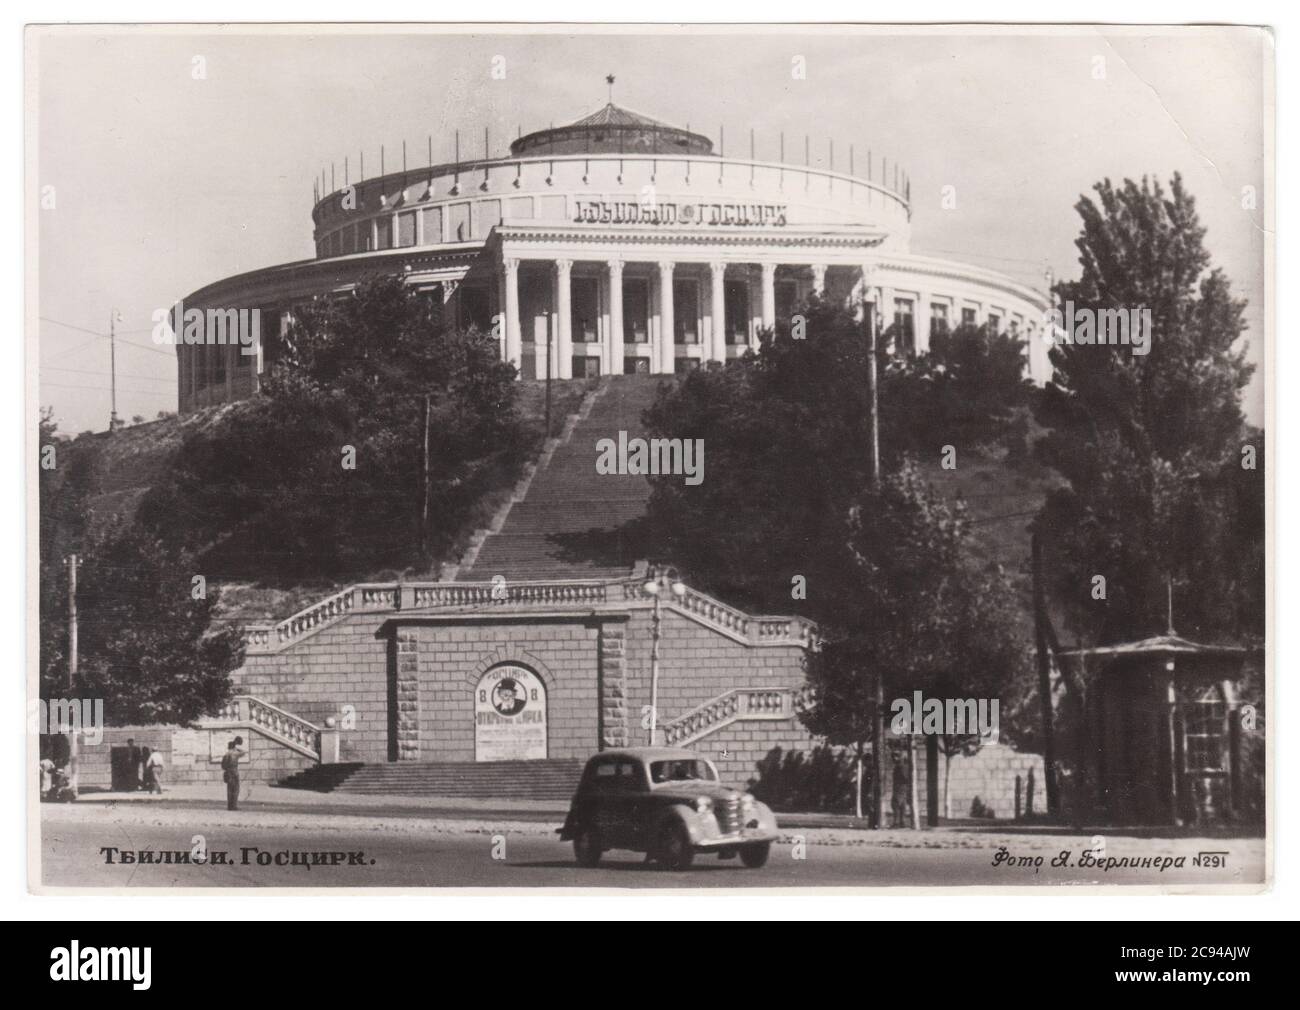 GEORGIA, URSS - ALREDEDOR de 1953: Una postal impresa en el CNTRY muestra una fotografía monocroma del Circo de Tbilisi Foto de stock